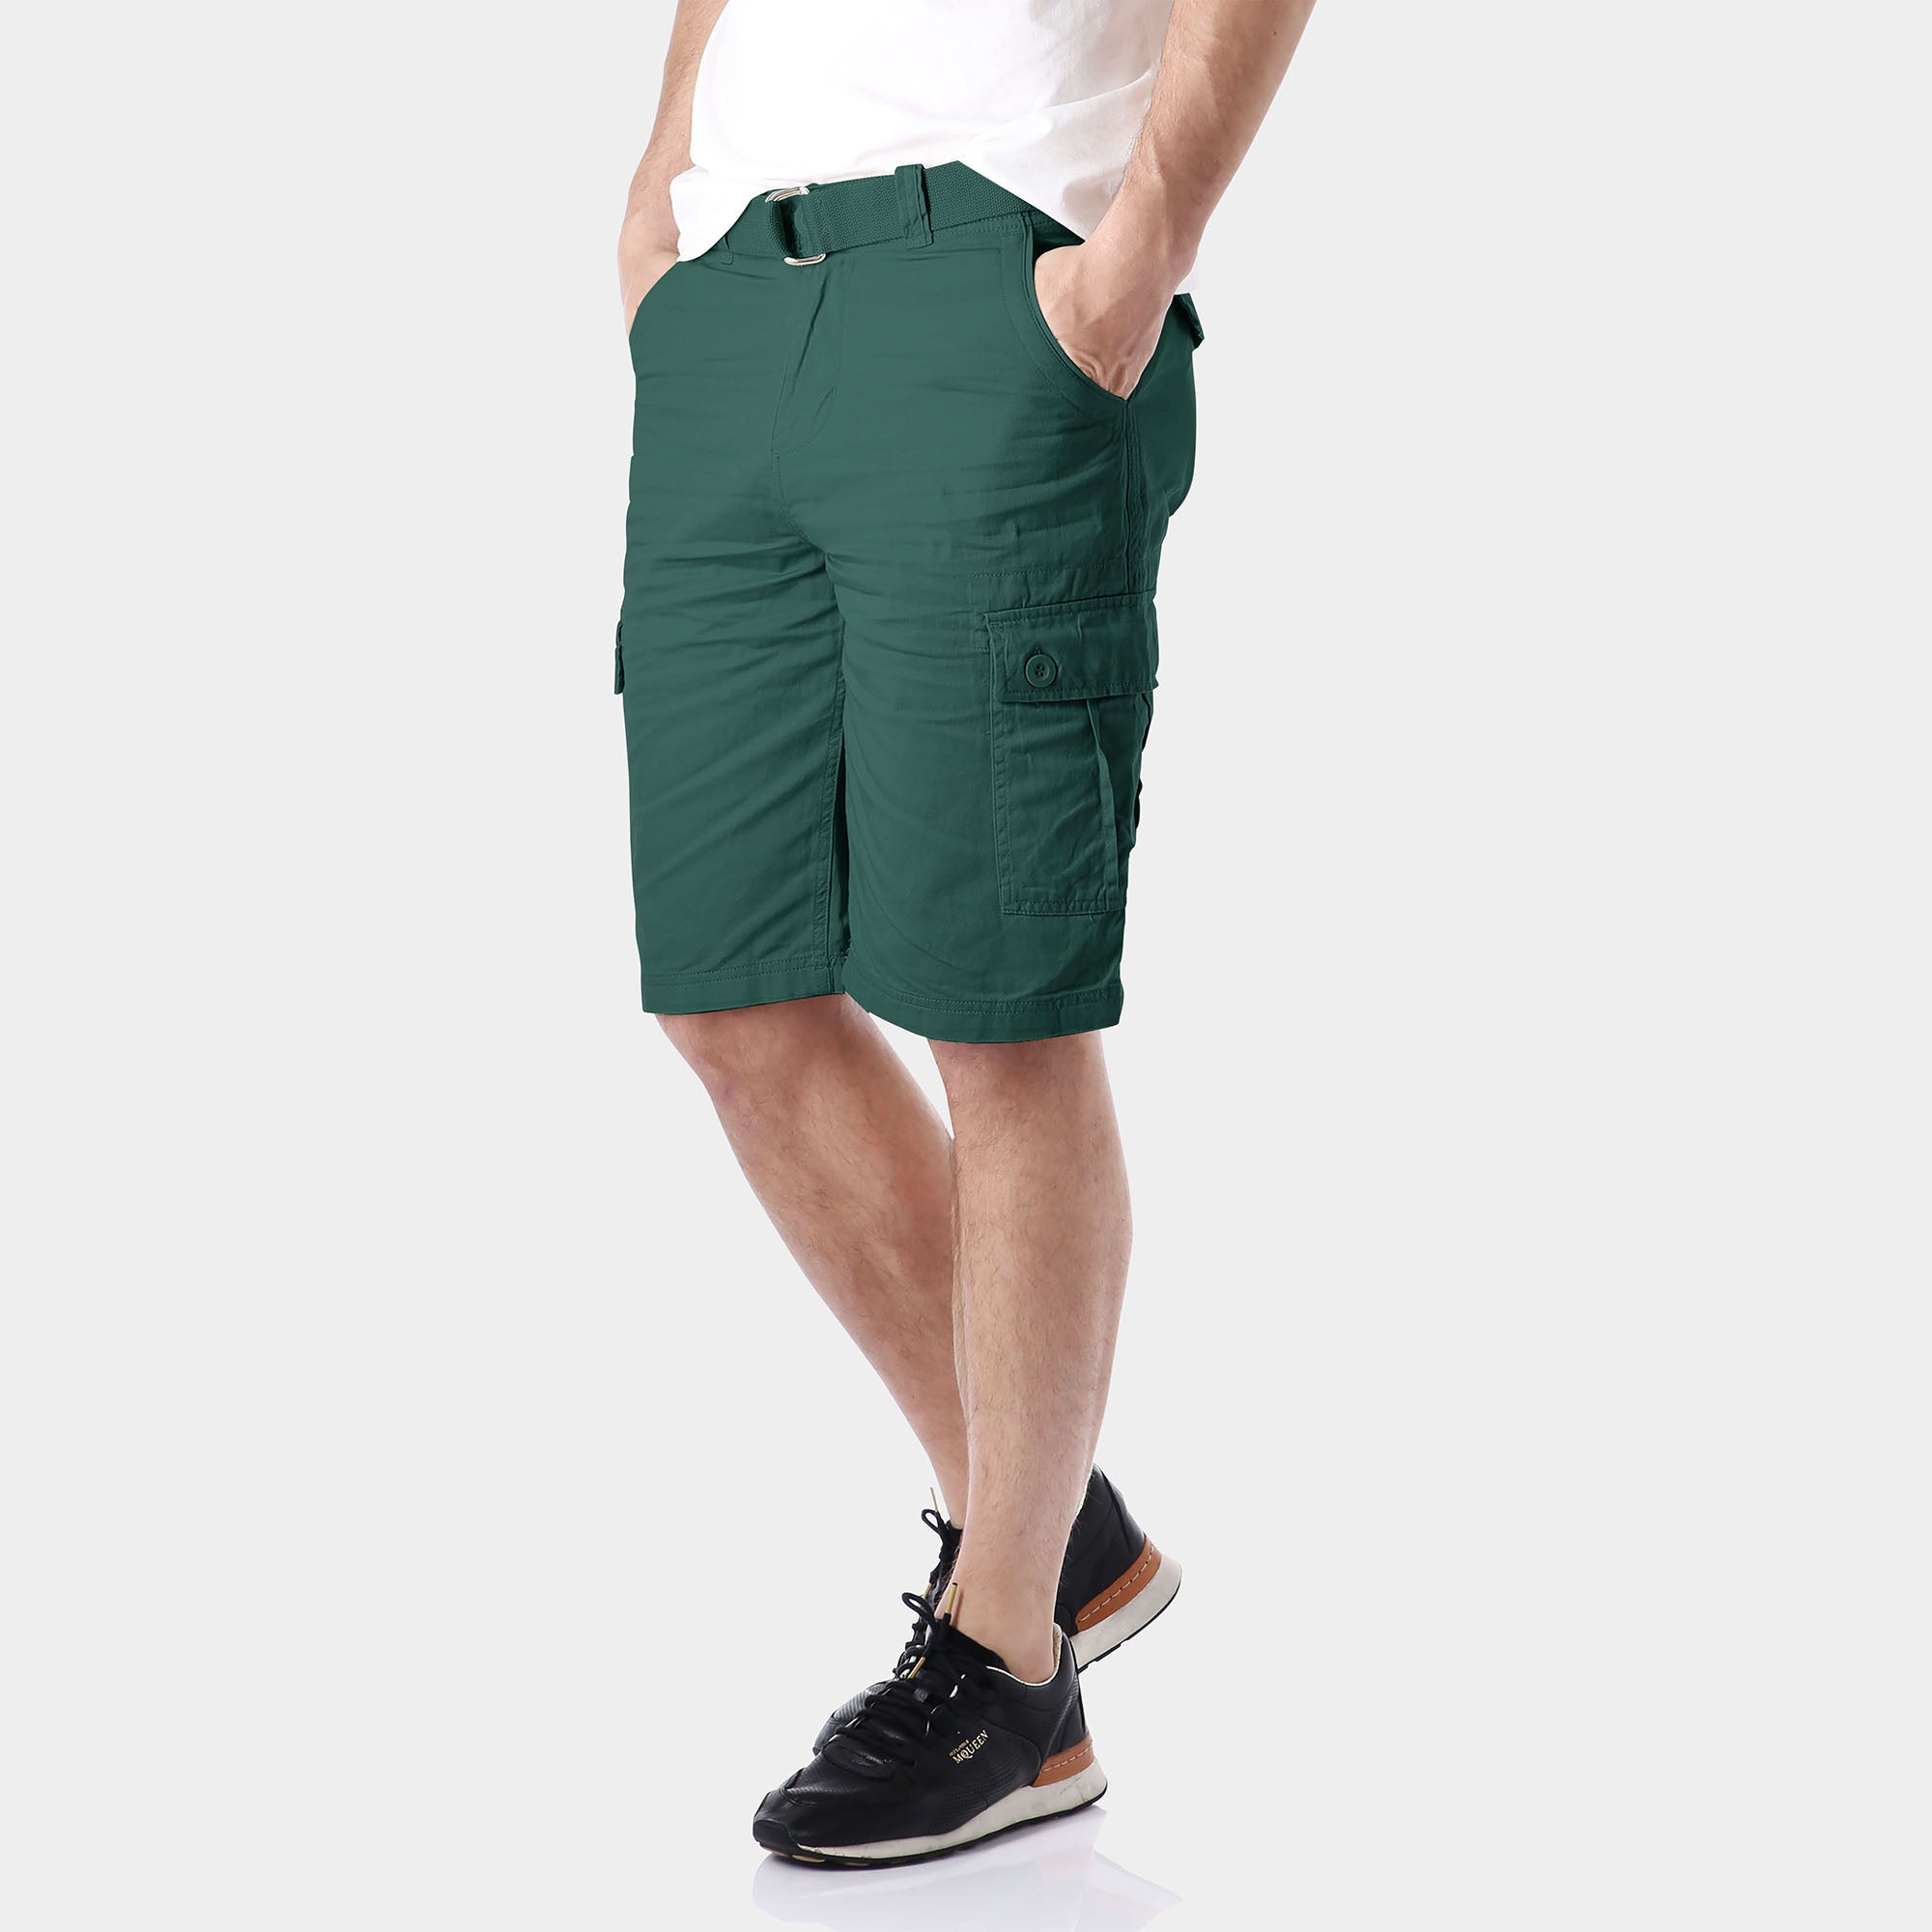 cargo shorts_mens cargo shorts_men's cargo shorts_wrangler cargo shorts_boys cargo shorts_unionbay cargo shorts_old navy cargo shorts_Wood Green